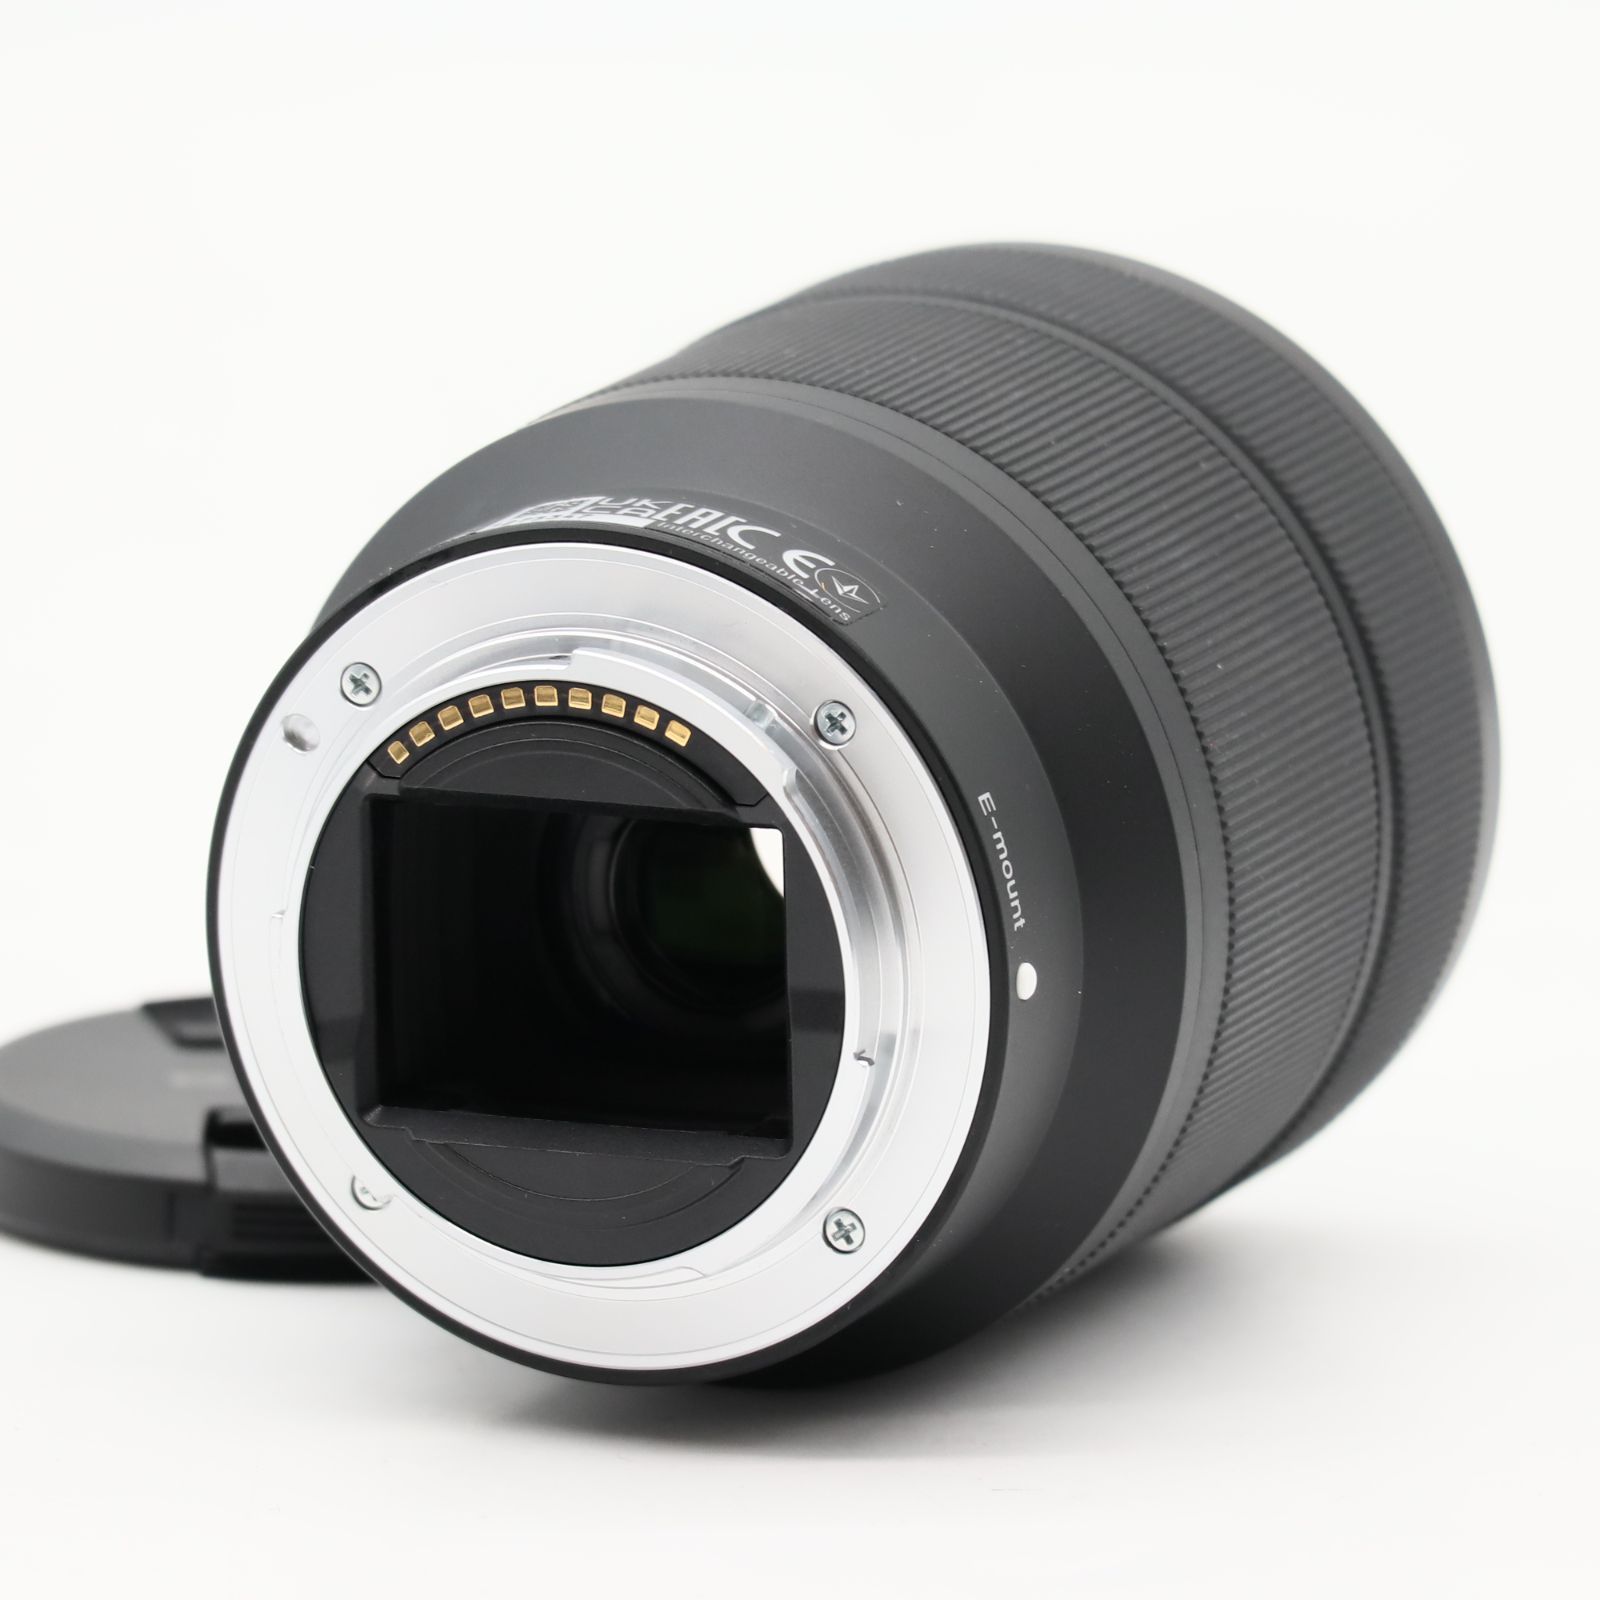 ソニー(SONY) 標準ズームレンズ フルサイズ FE 28-70mm F3.5-5.6 OSS デジタル一眼カメラα[Eマウント]用 純正レンズ  SEL2870 #3413 - メルカリ